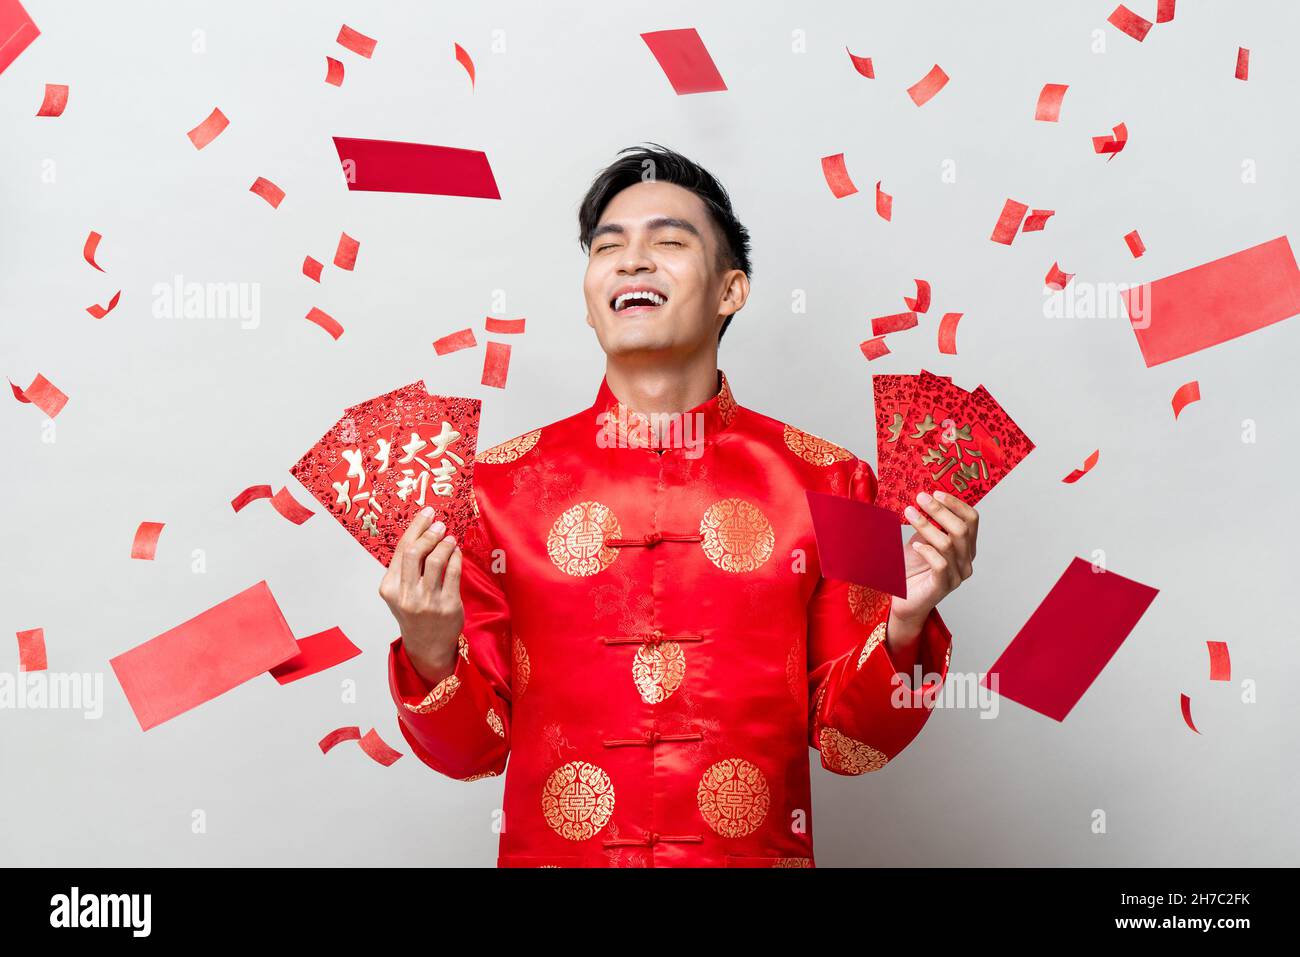 Glücklich schöner asiatischer Mann in traditioneller orientalischer Tracht mit roten Umschlägen oder Ang Pao auf grauem Hintergrund mit Konfetti, chinesische Texte bedeuten großartig Stockfoto